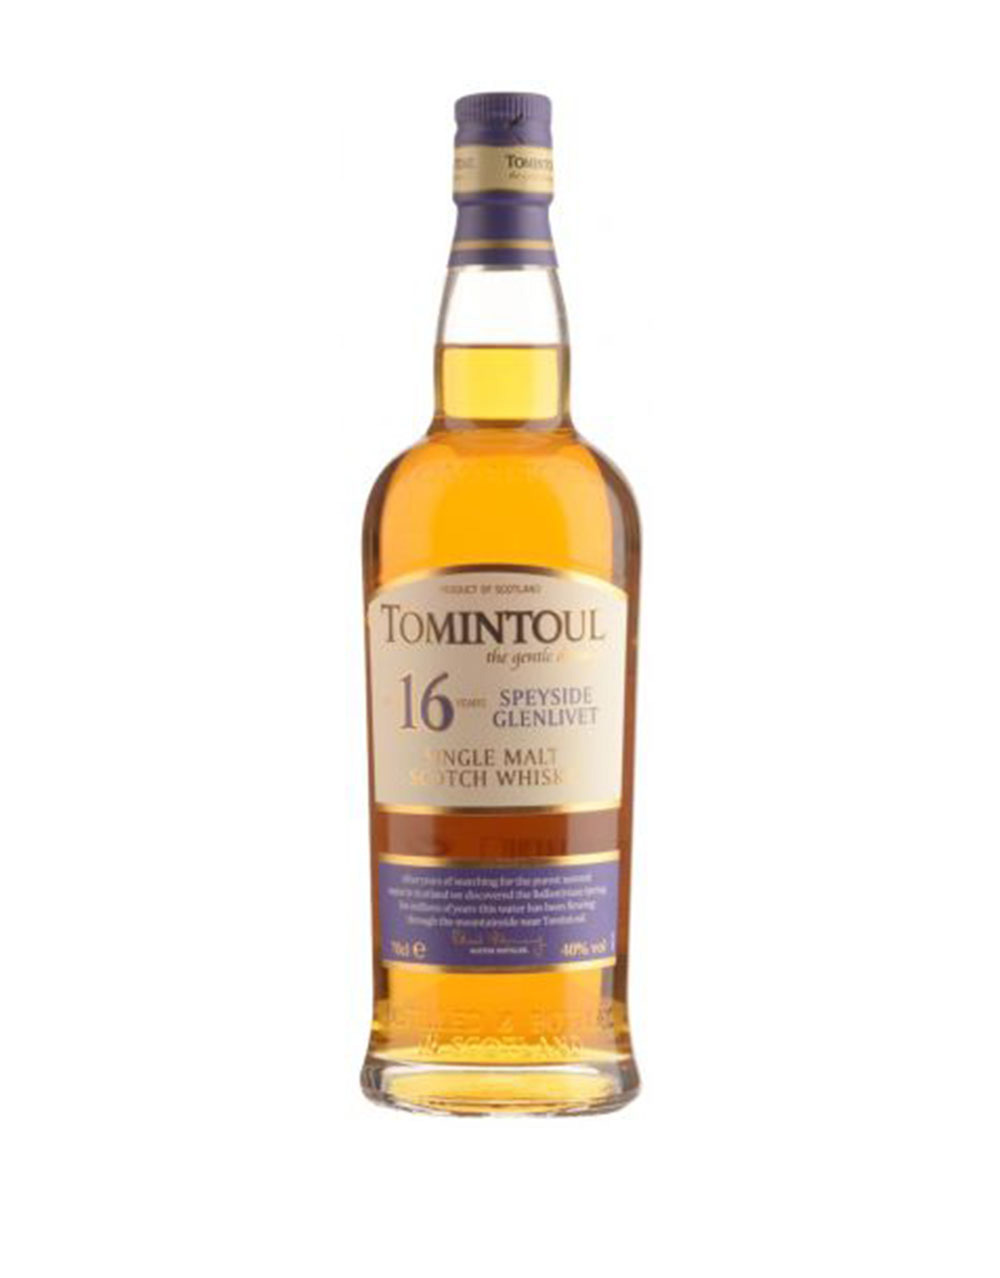 Tomintoul the Gentle Dream Speyside Glenlivet 16 year old Single Malt Scotch Whisky